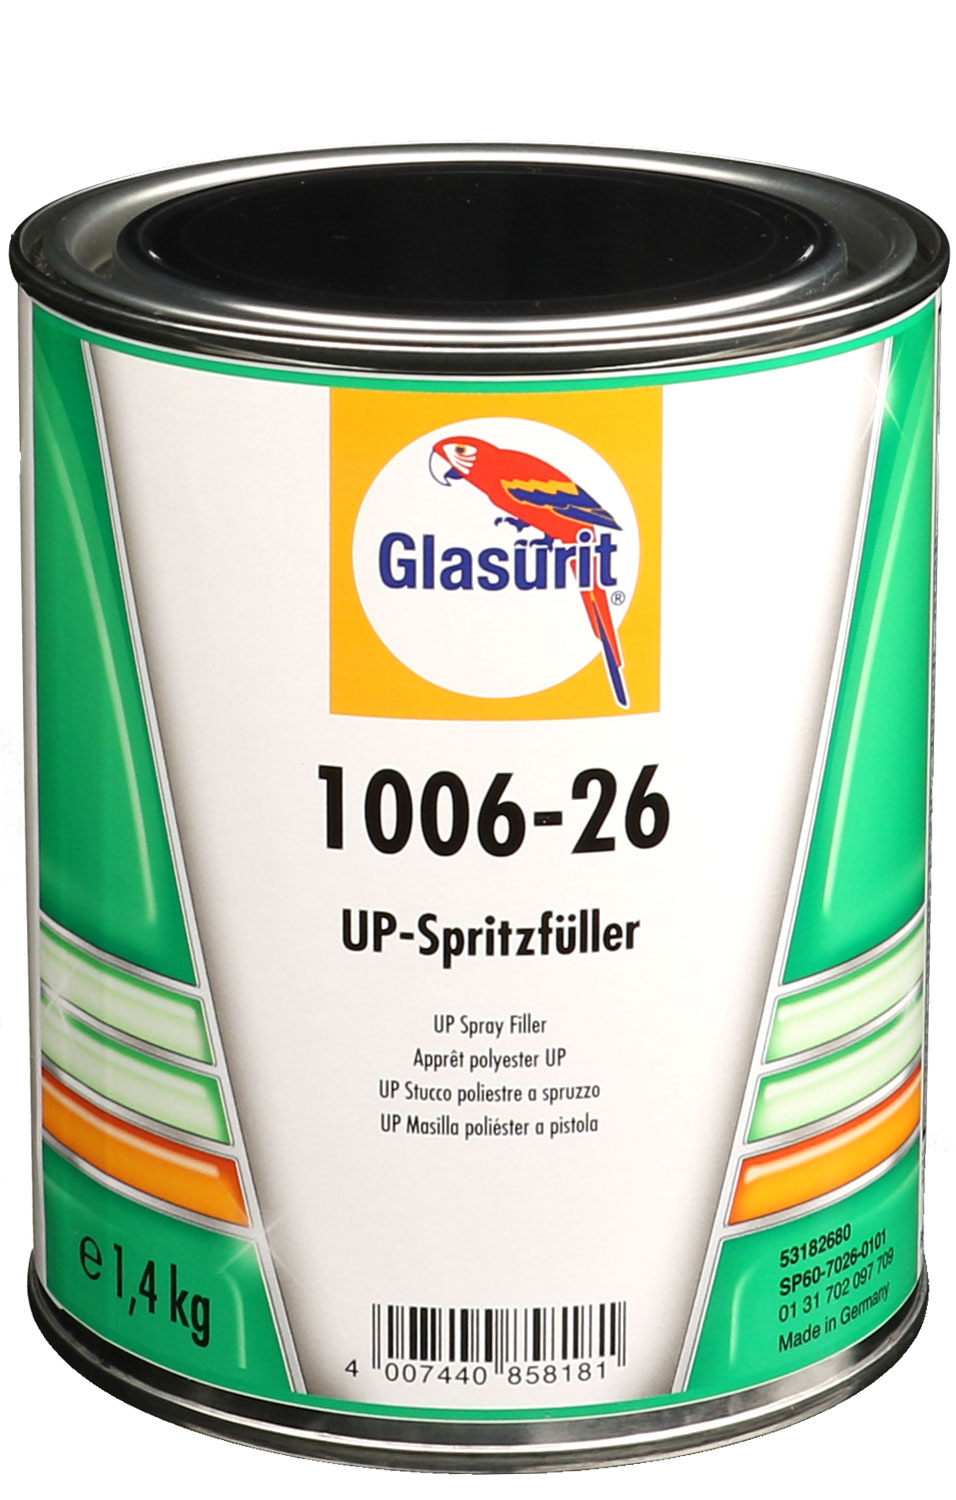 Glasurit UP-Spritzfüller 1006-26